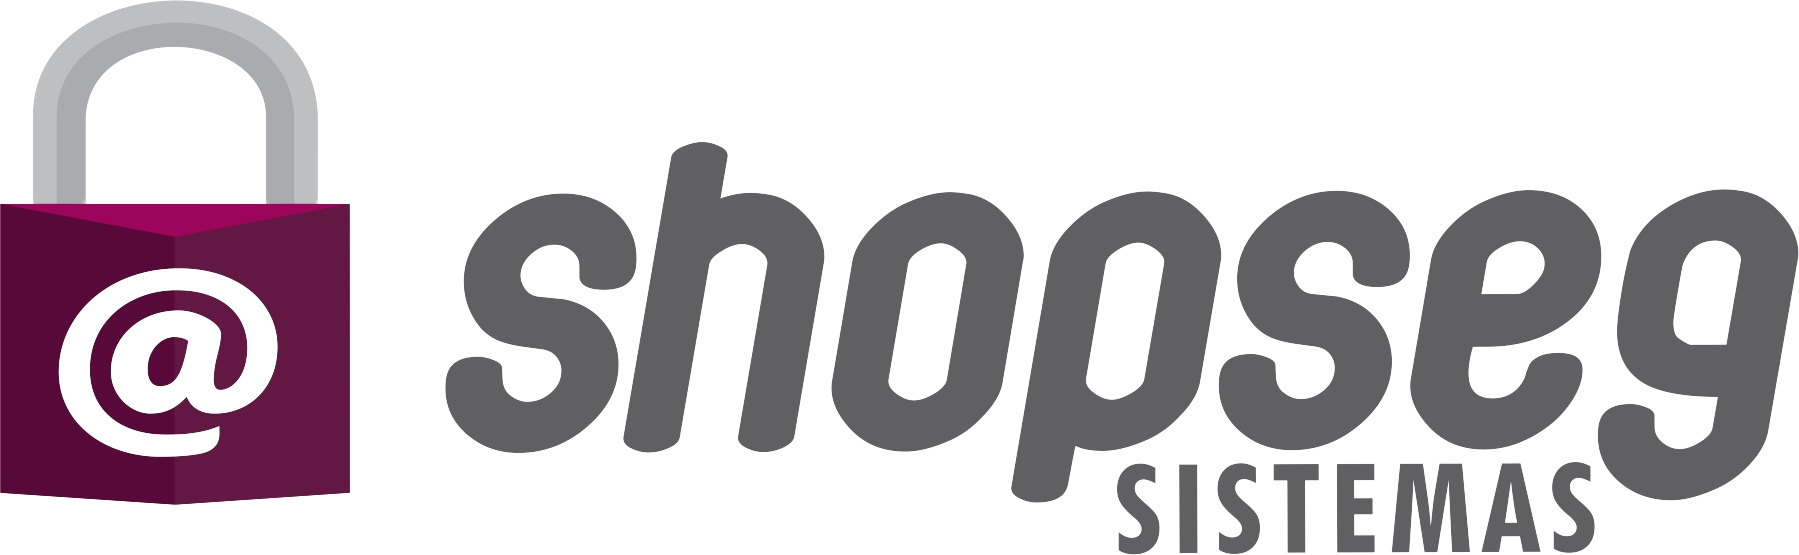 logo-shopseg